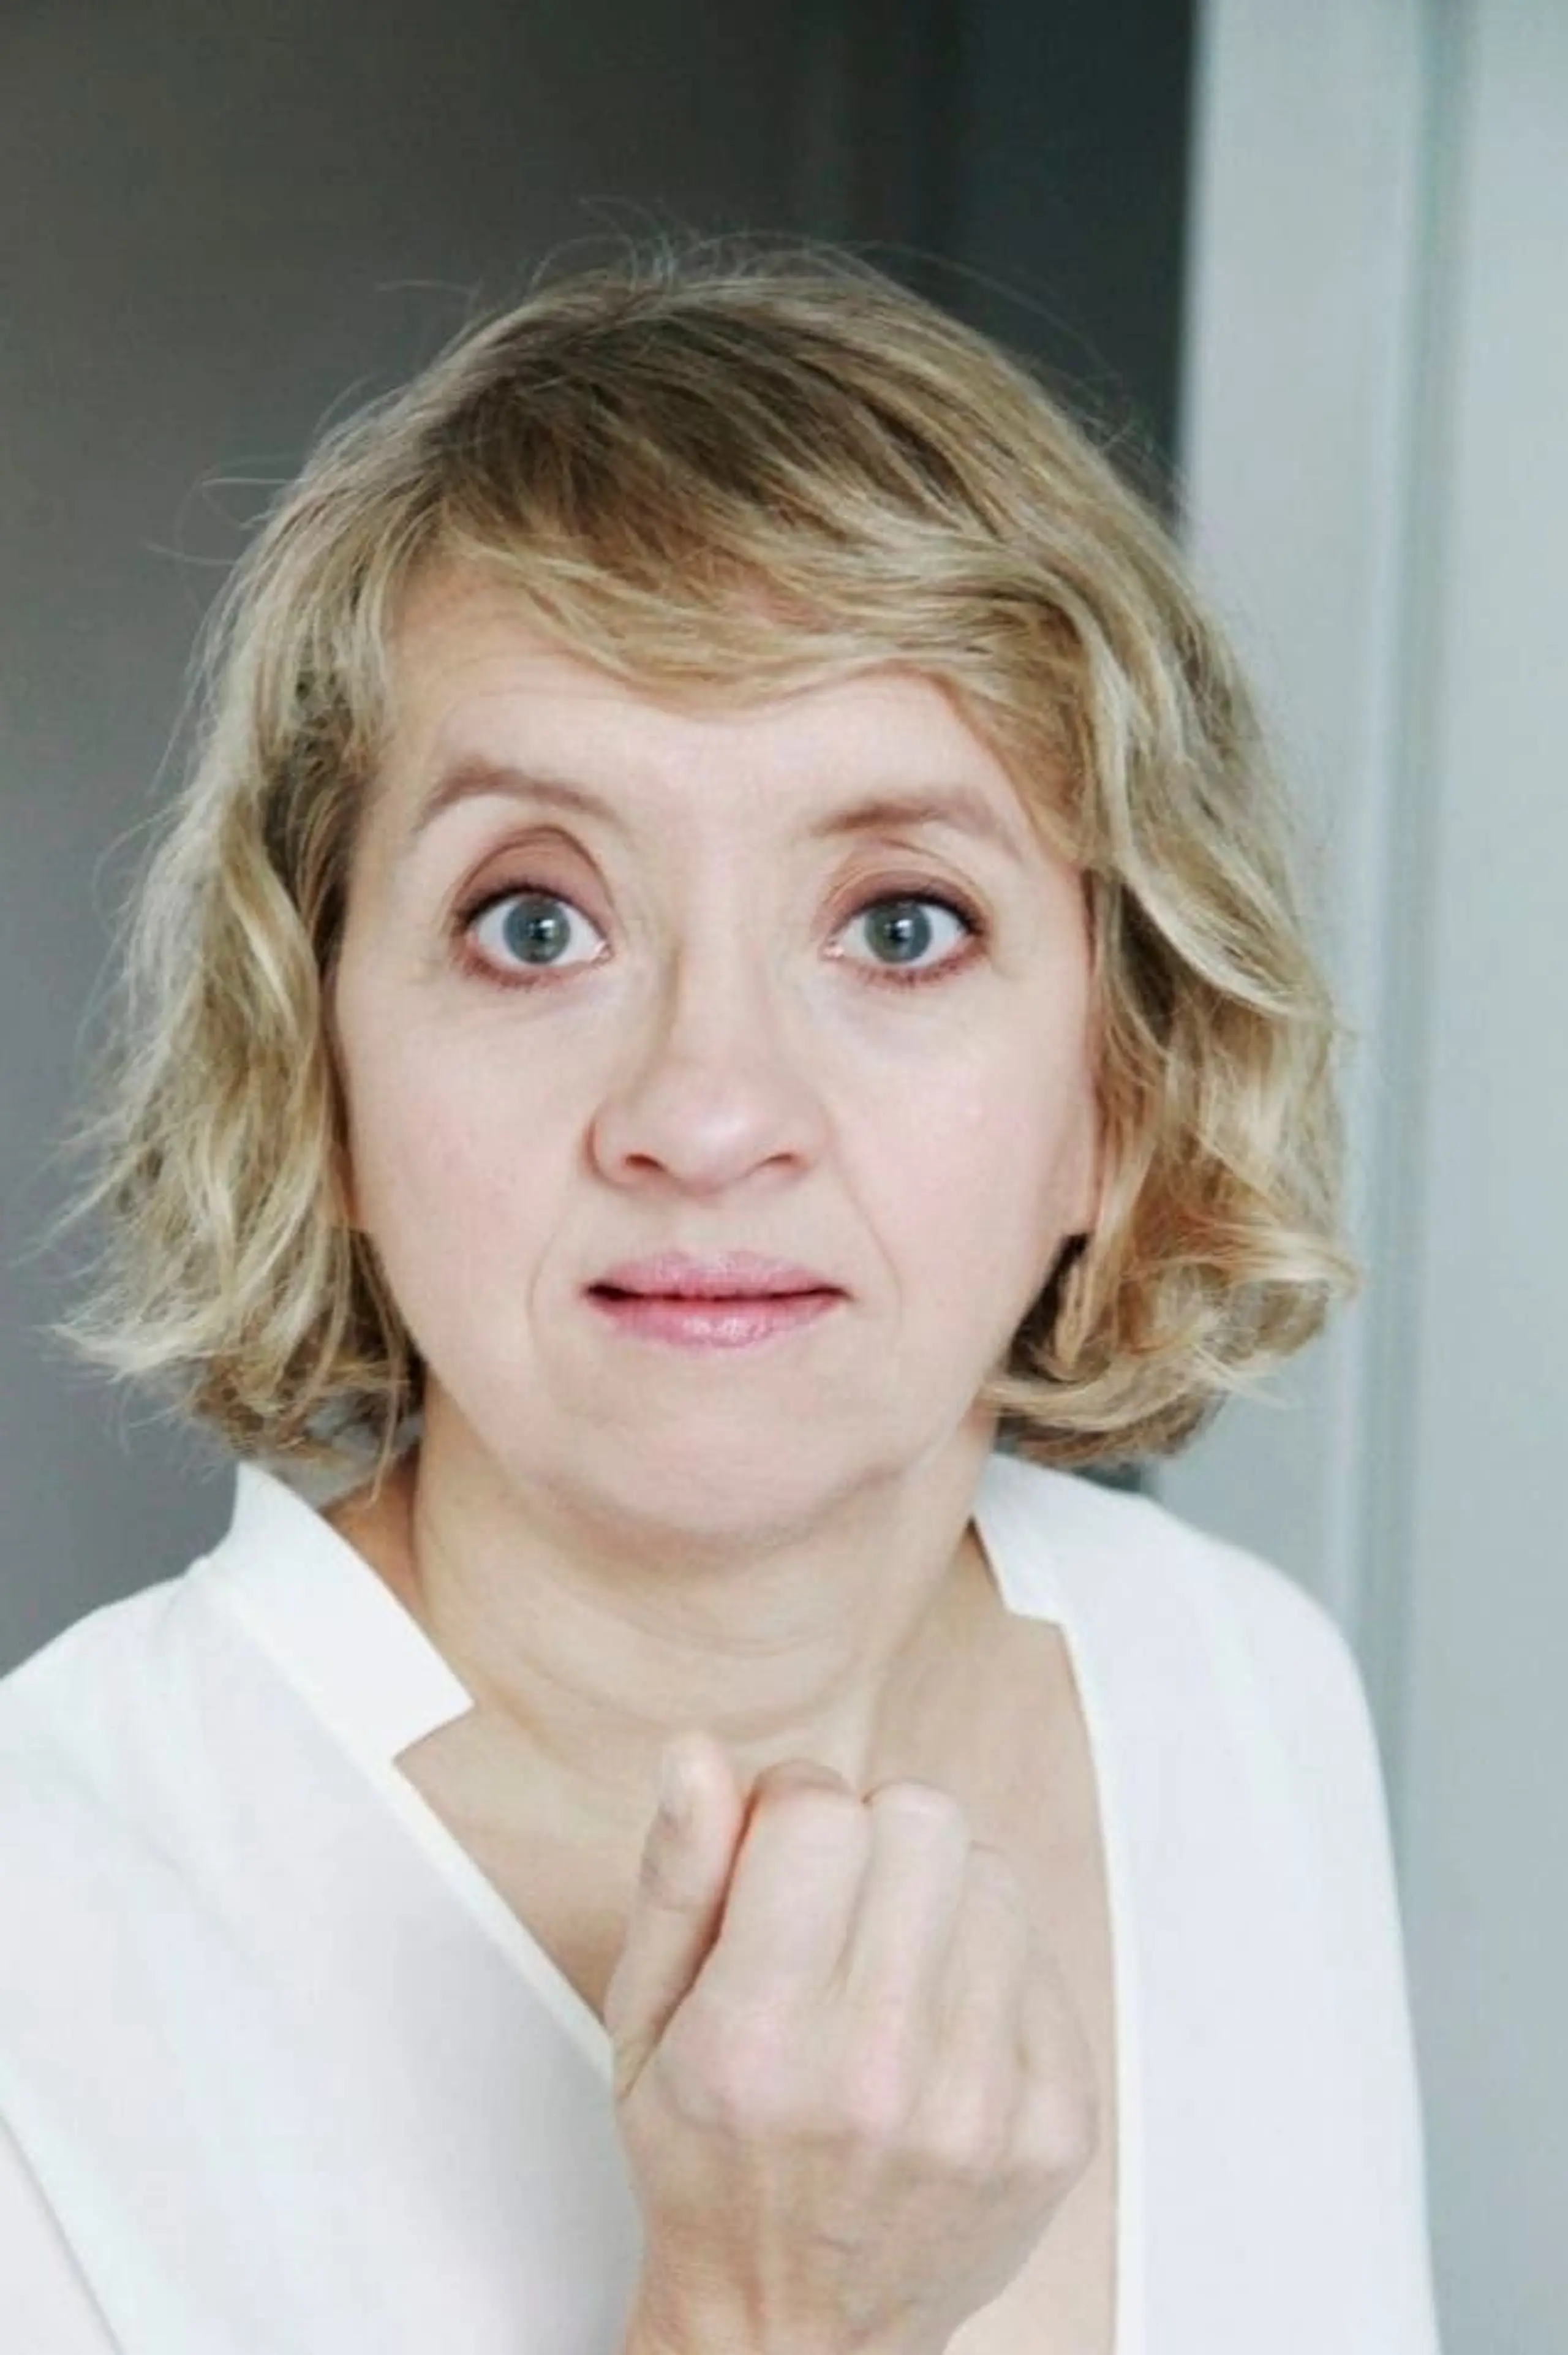 Anna Böttcher